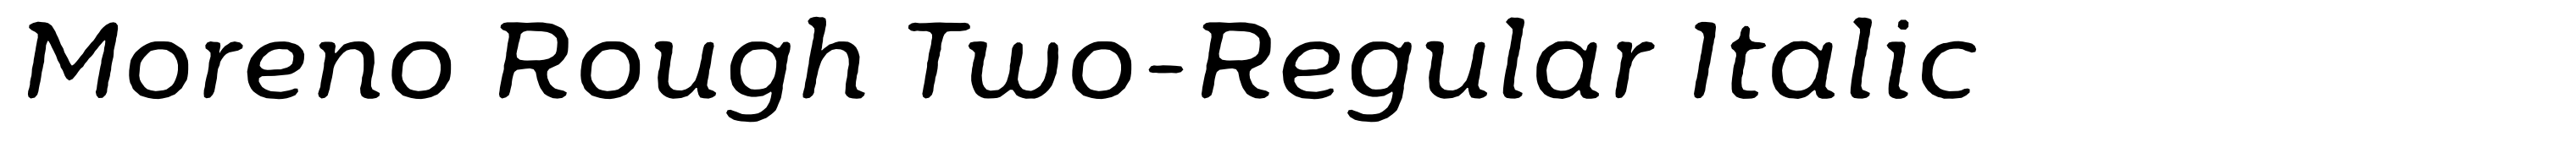 Moreno Rough Two-Regular Italic